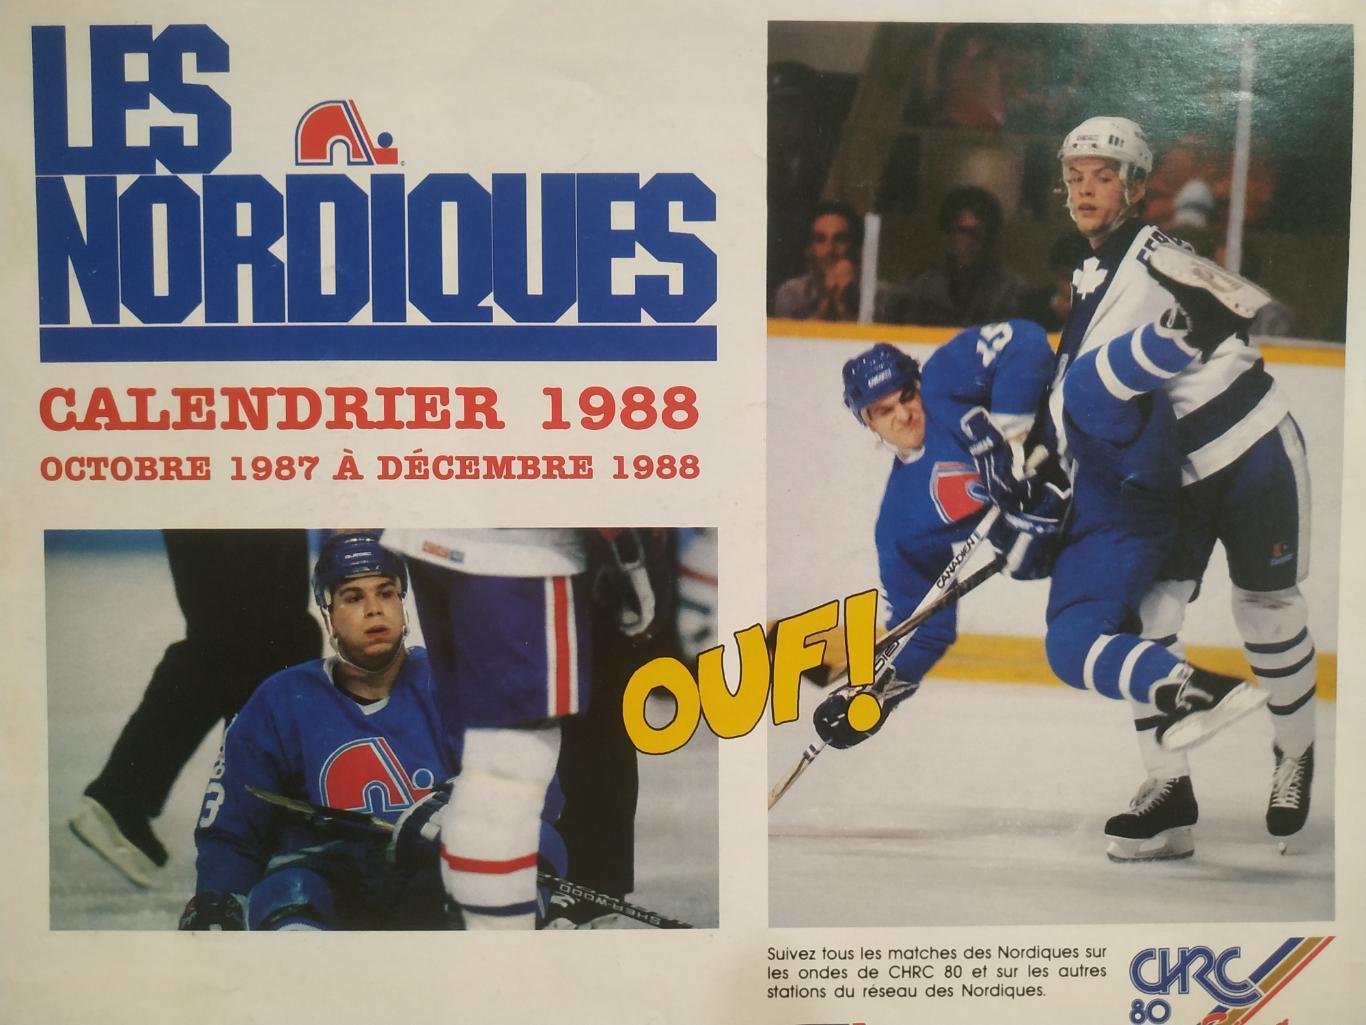 ХОККЕЙ КАЛЕНДАРЬ НХЛ КВЕБЕК НОРДИКС 1988 NHL LES NORDIQUES OFFICIAL CALENDAR